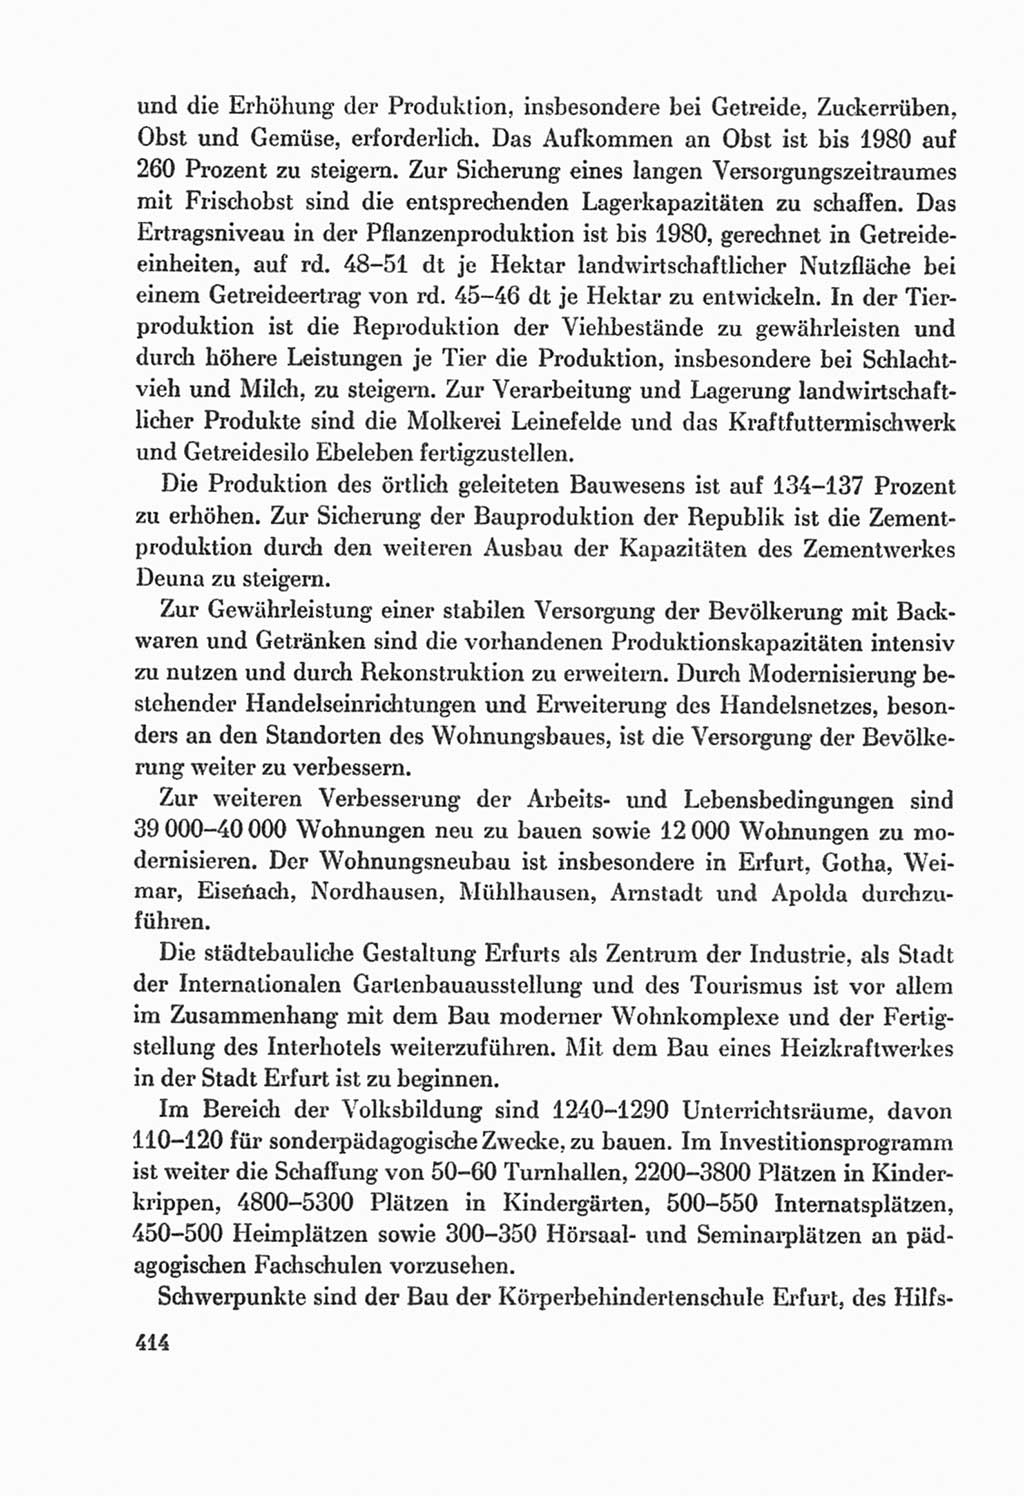 Protokoll der Verhandlungen des Ⅸ. Parteitages der Sozialistischen Einheitspartei Deutschlands (SED) [Deutsche Demokratische Republik (DDR)] 1976, Band 2, Seite 414 (Prot. Verh. Ⅸ. PT SED DDR 1976, Bd. 2, S. 414)